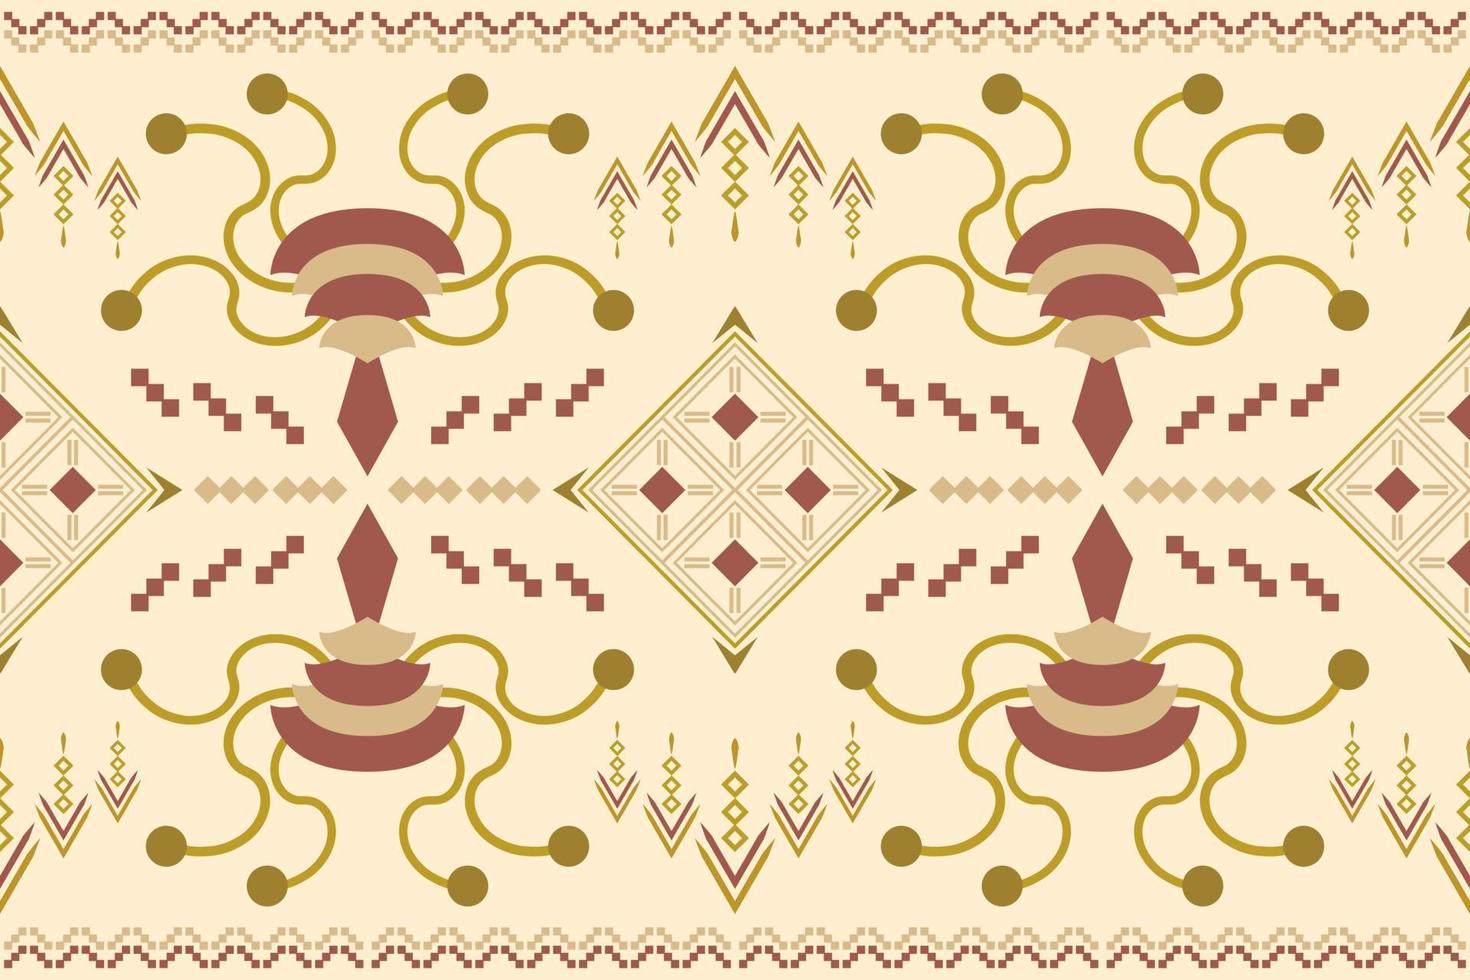 estilo geométrico padrão de tecido étnico. sarong asteca étnica oriental padrão tradicional fundo creme marrom branco. resumo,vetor,ilustração. use para textura, roupas, embrulhos, decoração, carpete. vetor